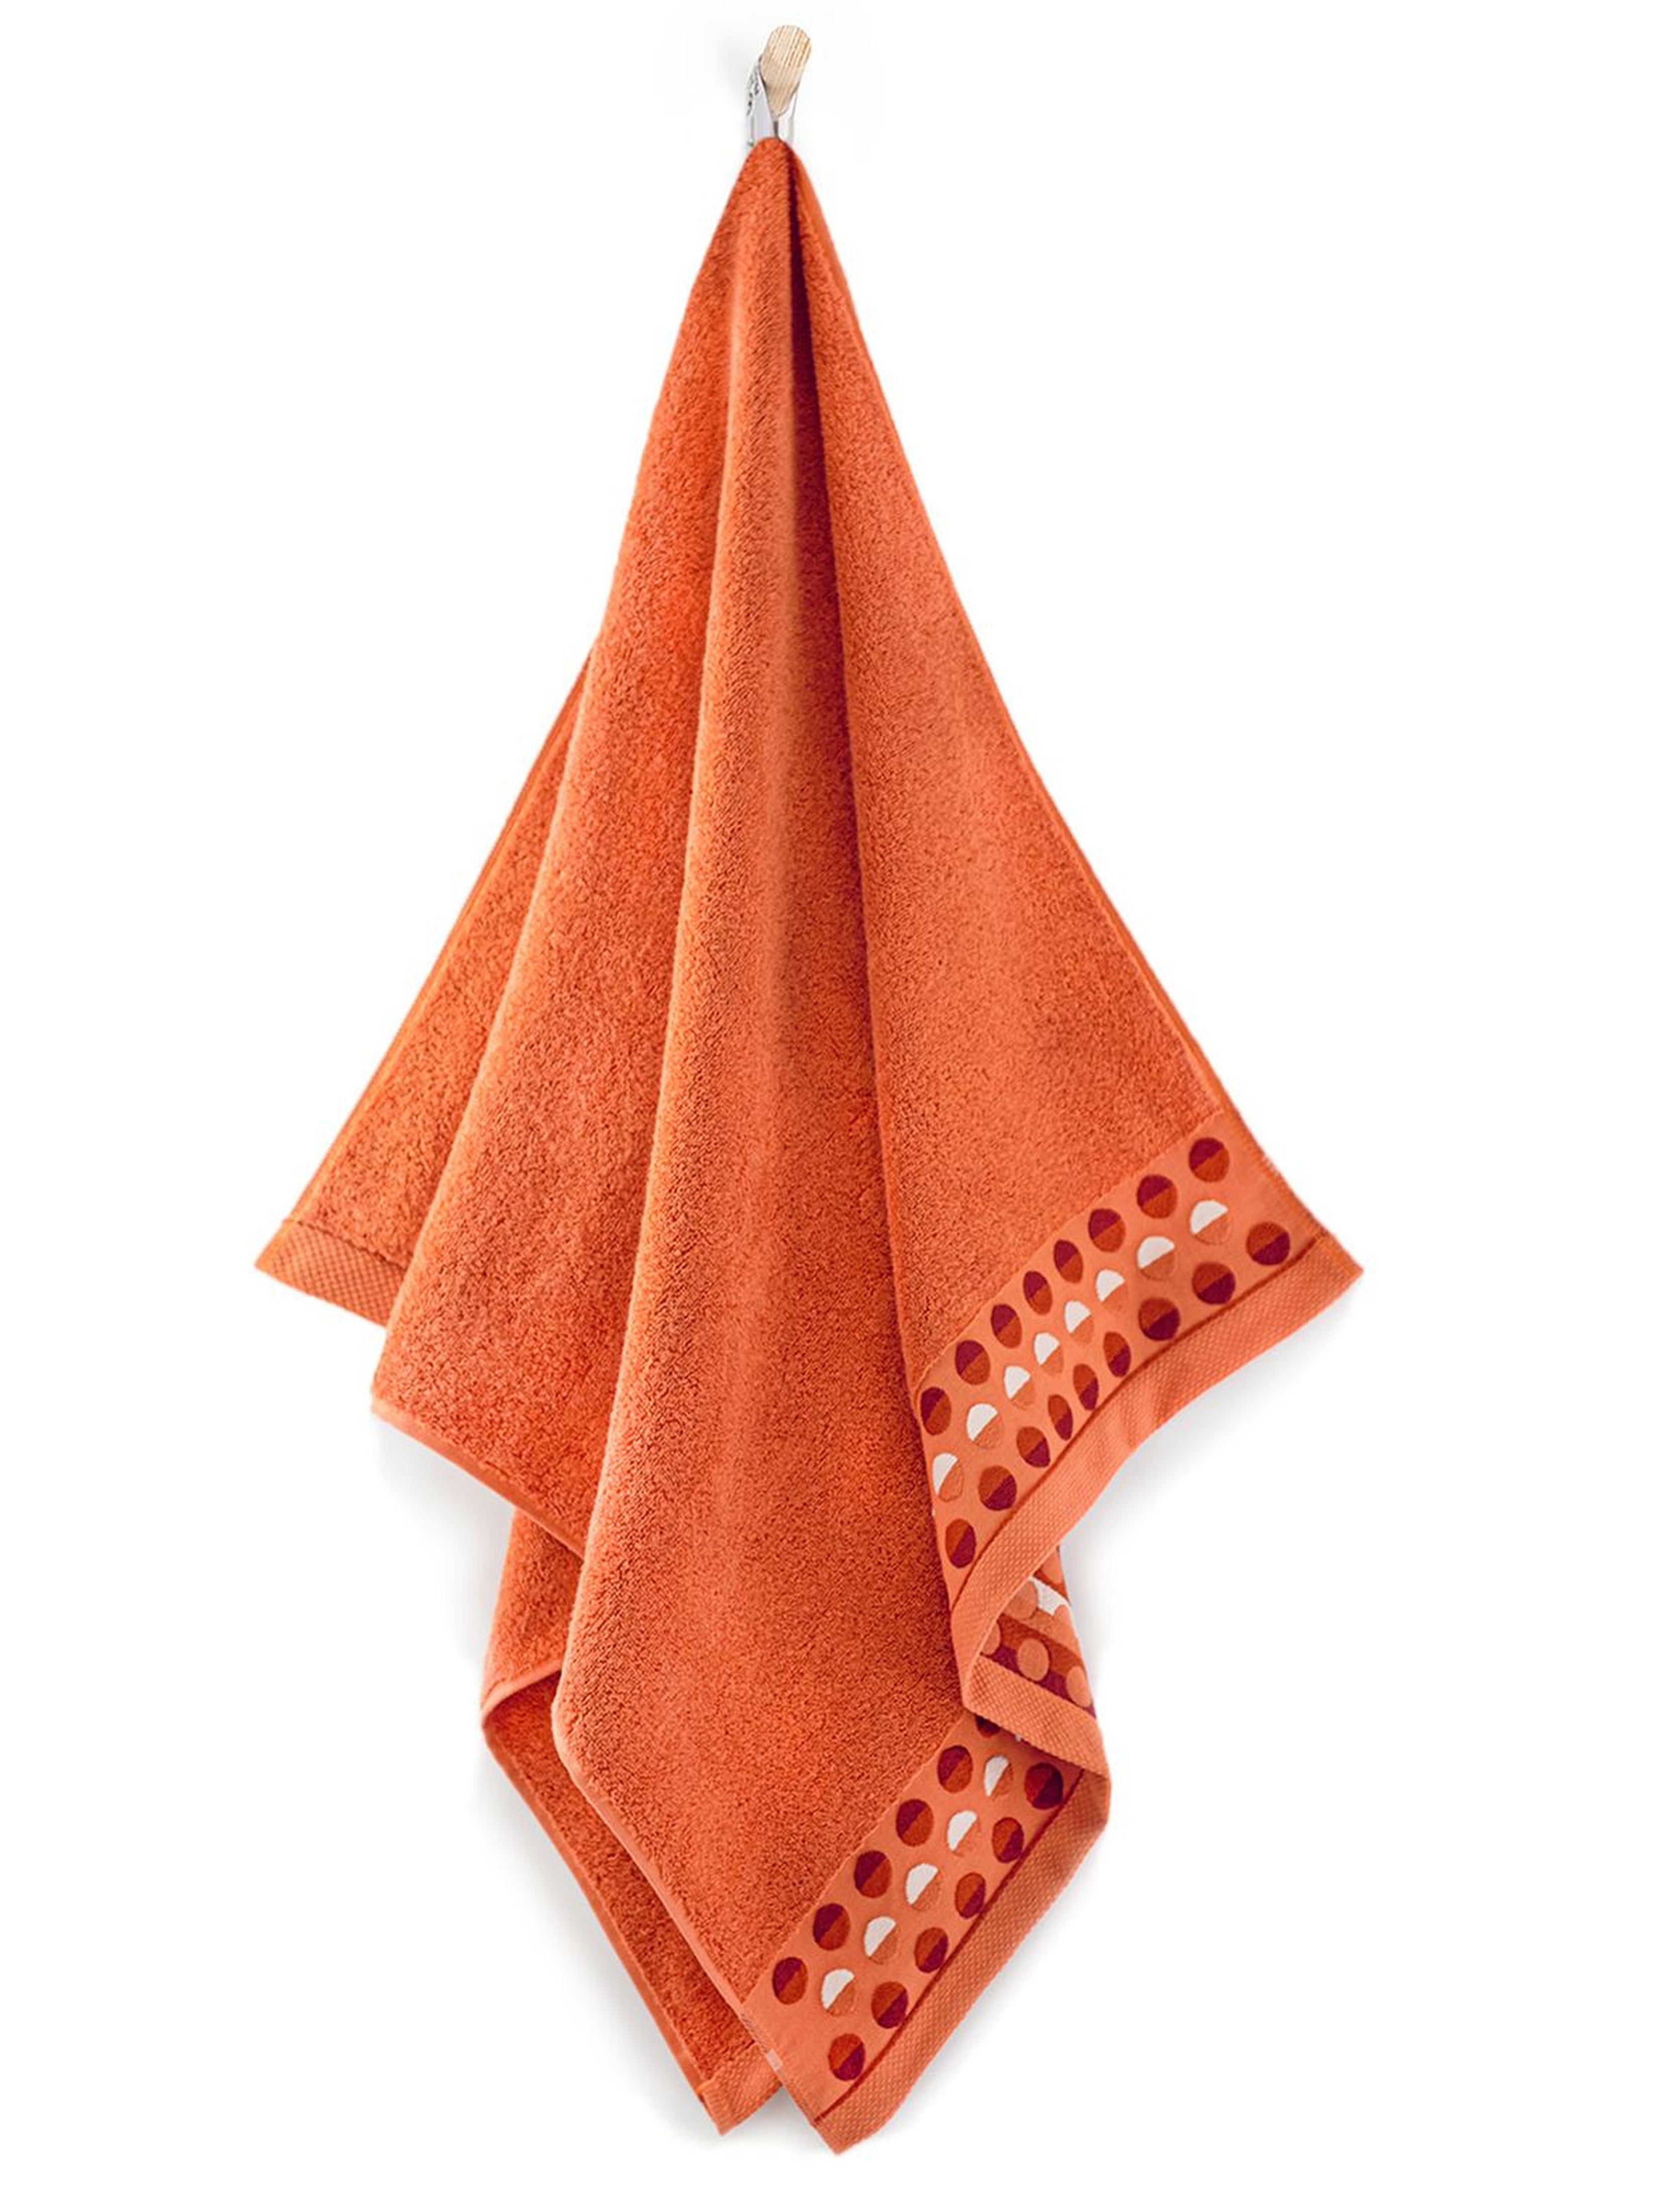 Ręcznik z bawełny egipskiej Zen pomarańczowy 50x90cm